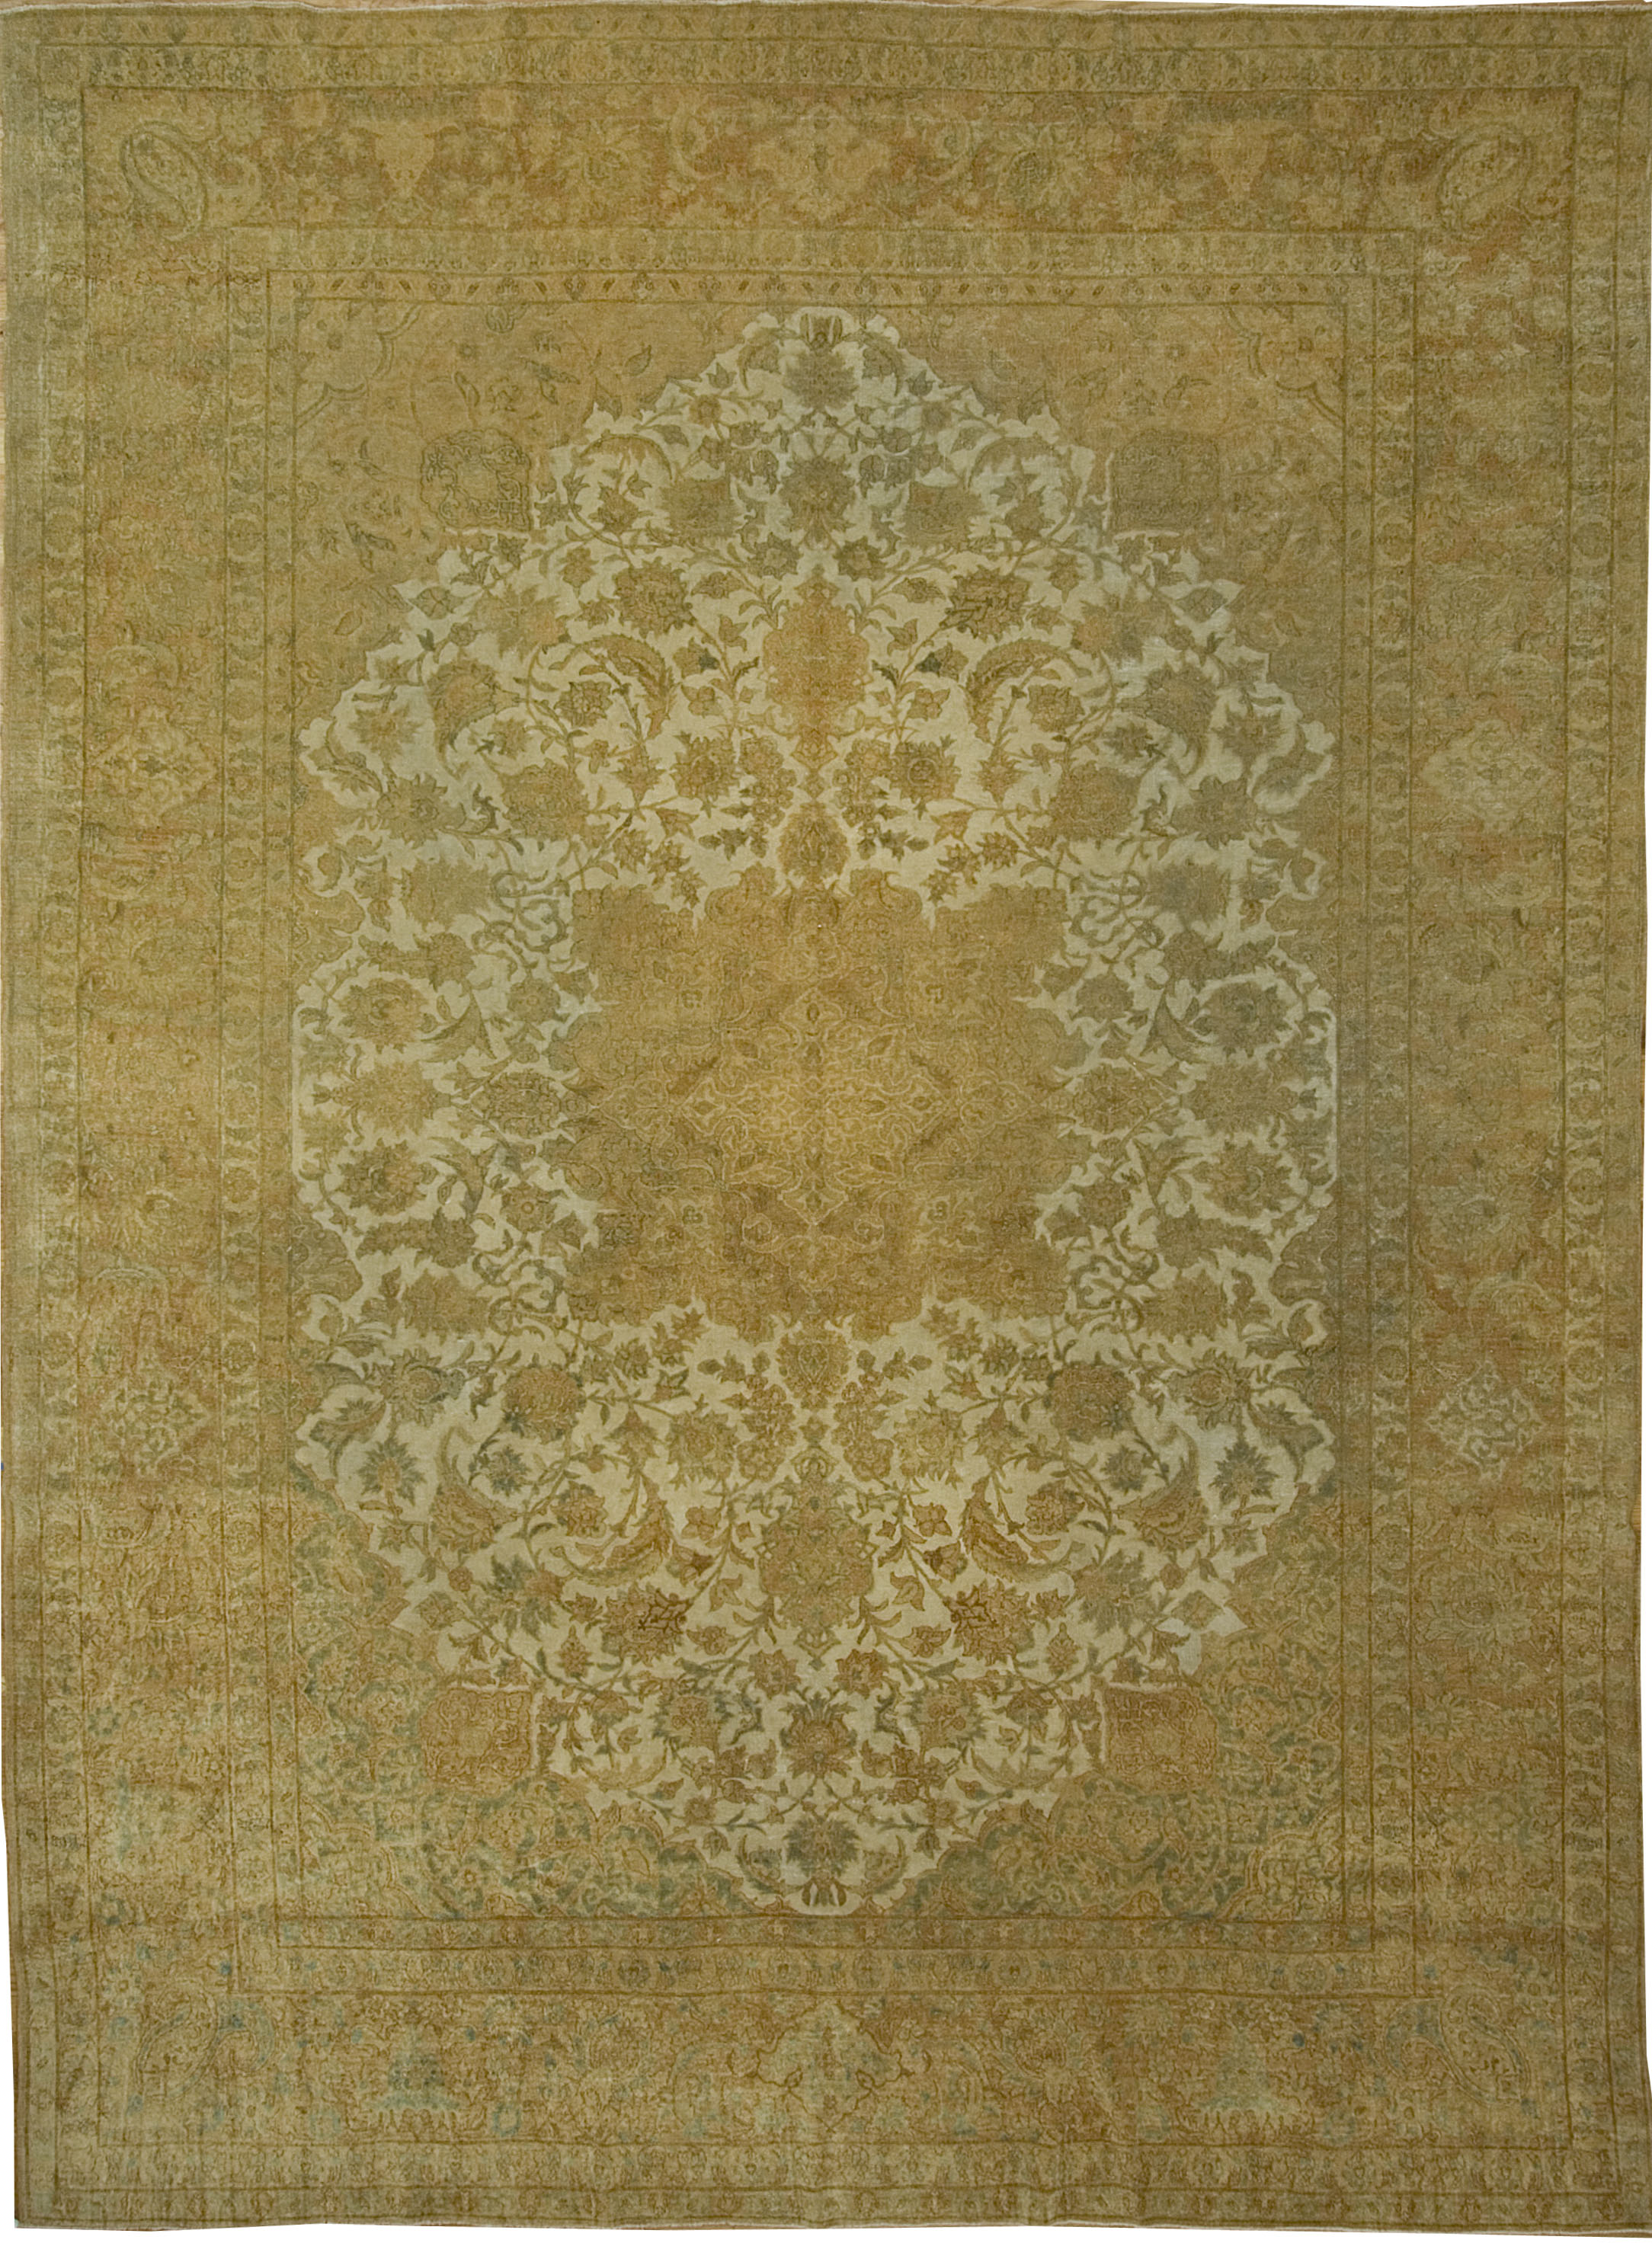 Persian Isfahan Rug; Vintage carpets